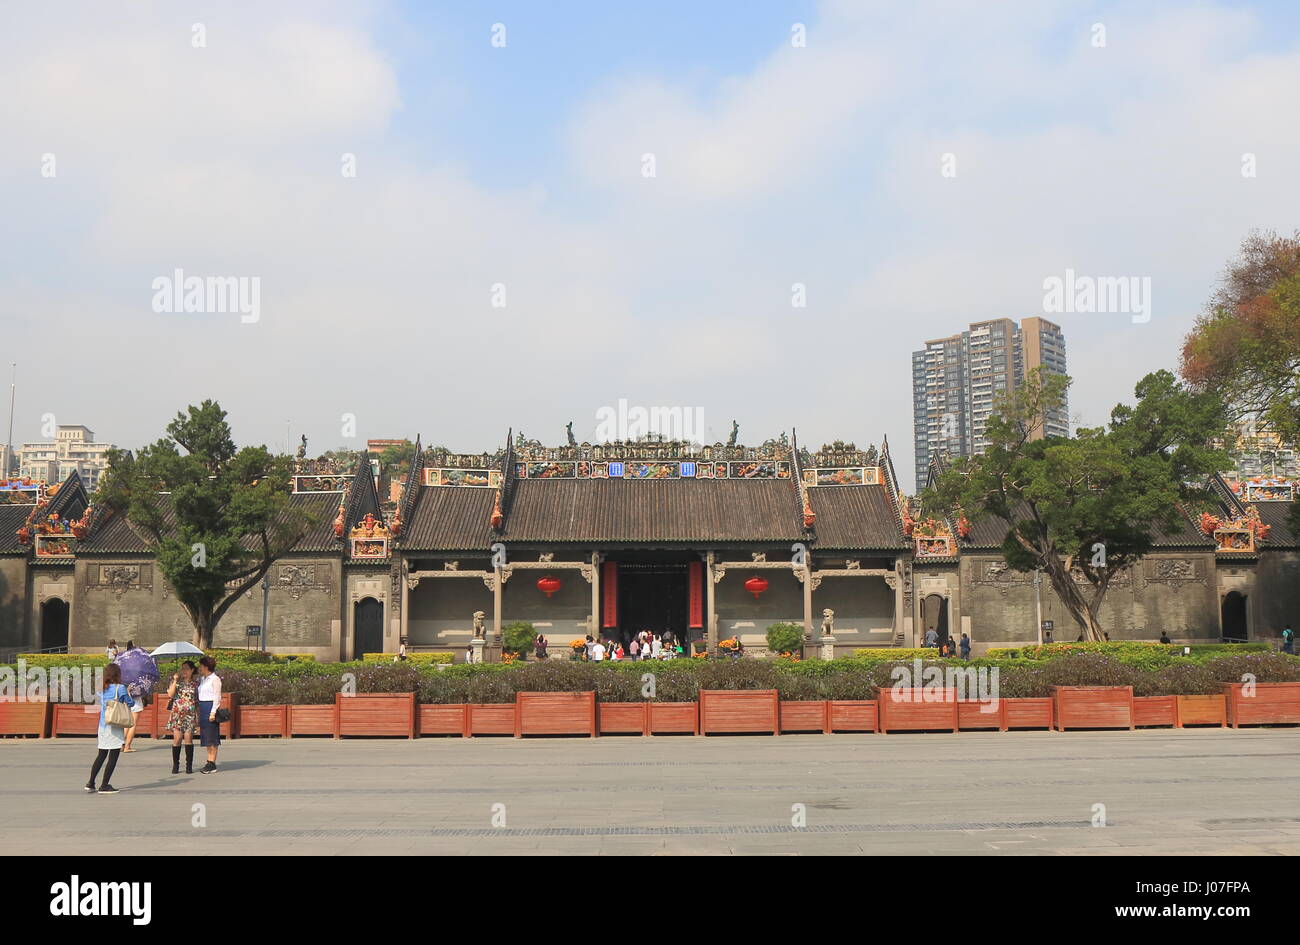 Les visiteurs à l'Académie du clan Chen à Guangzhou en Chine. Académie du clan Chen, est un temple construit en 1897 Banque D'Images